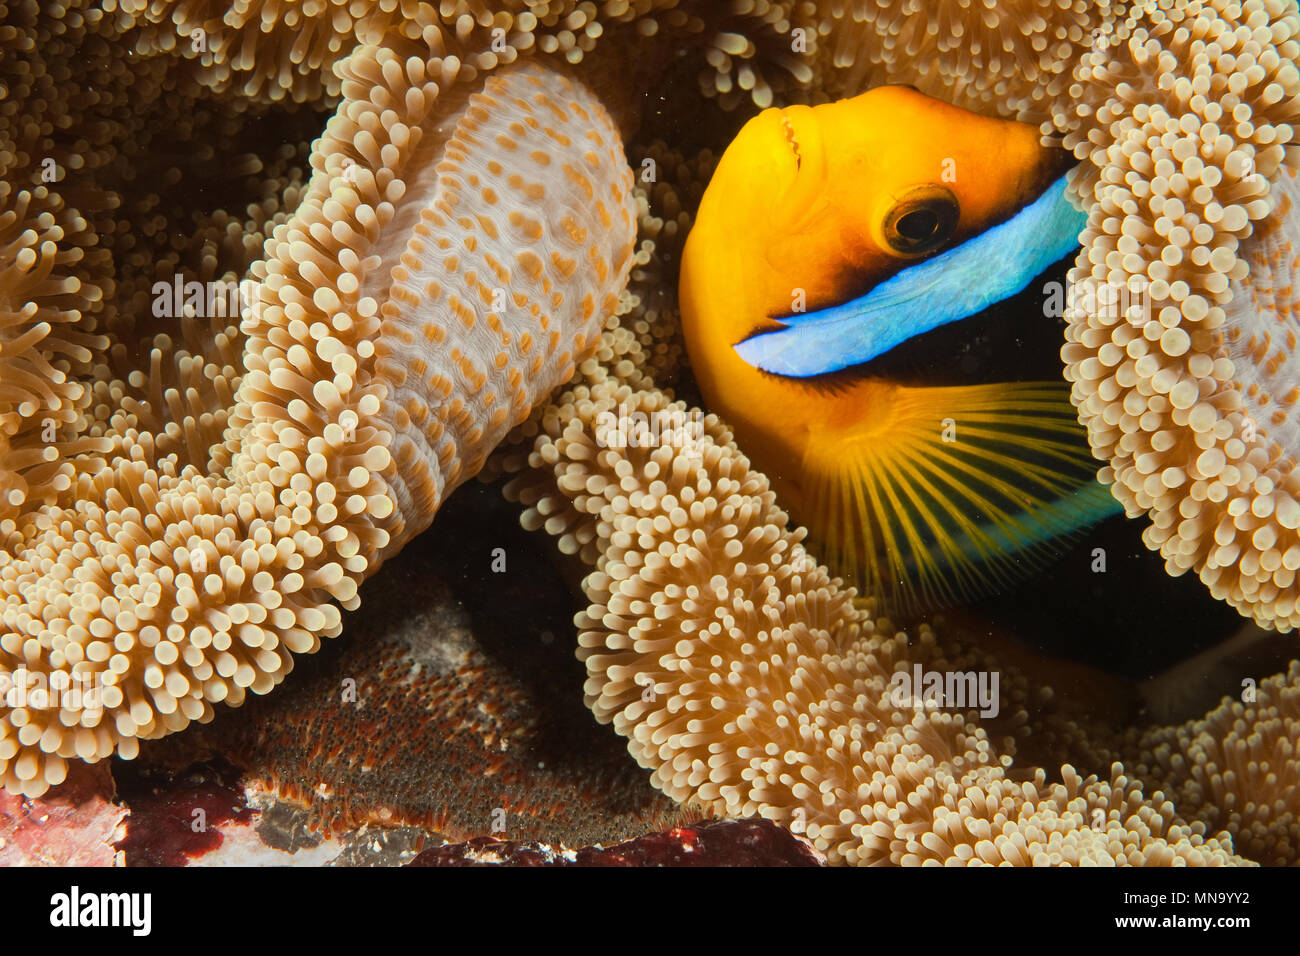 El pez payaso | | Anemonenfisch Amphiprion clarkii Foto de stock